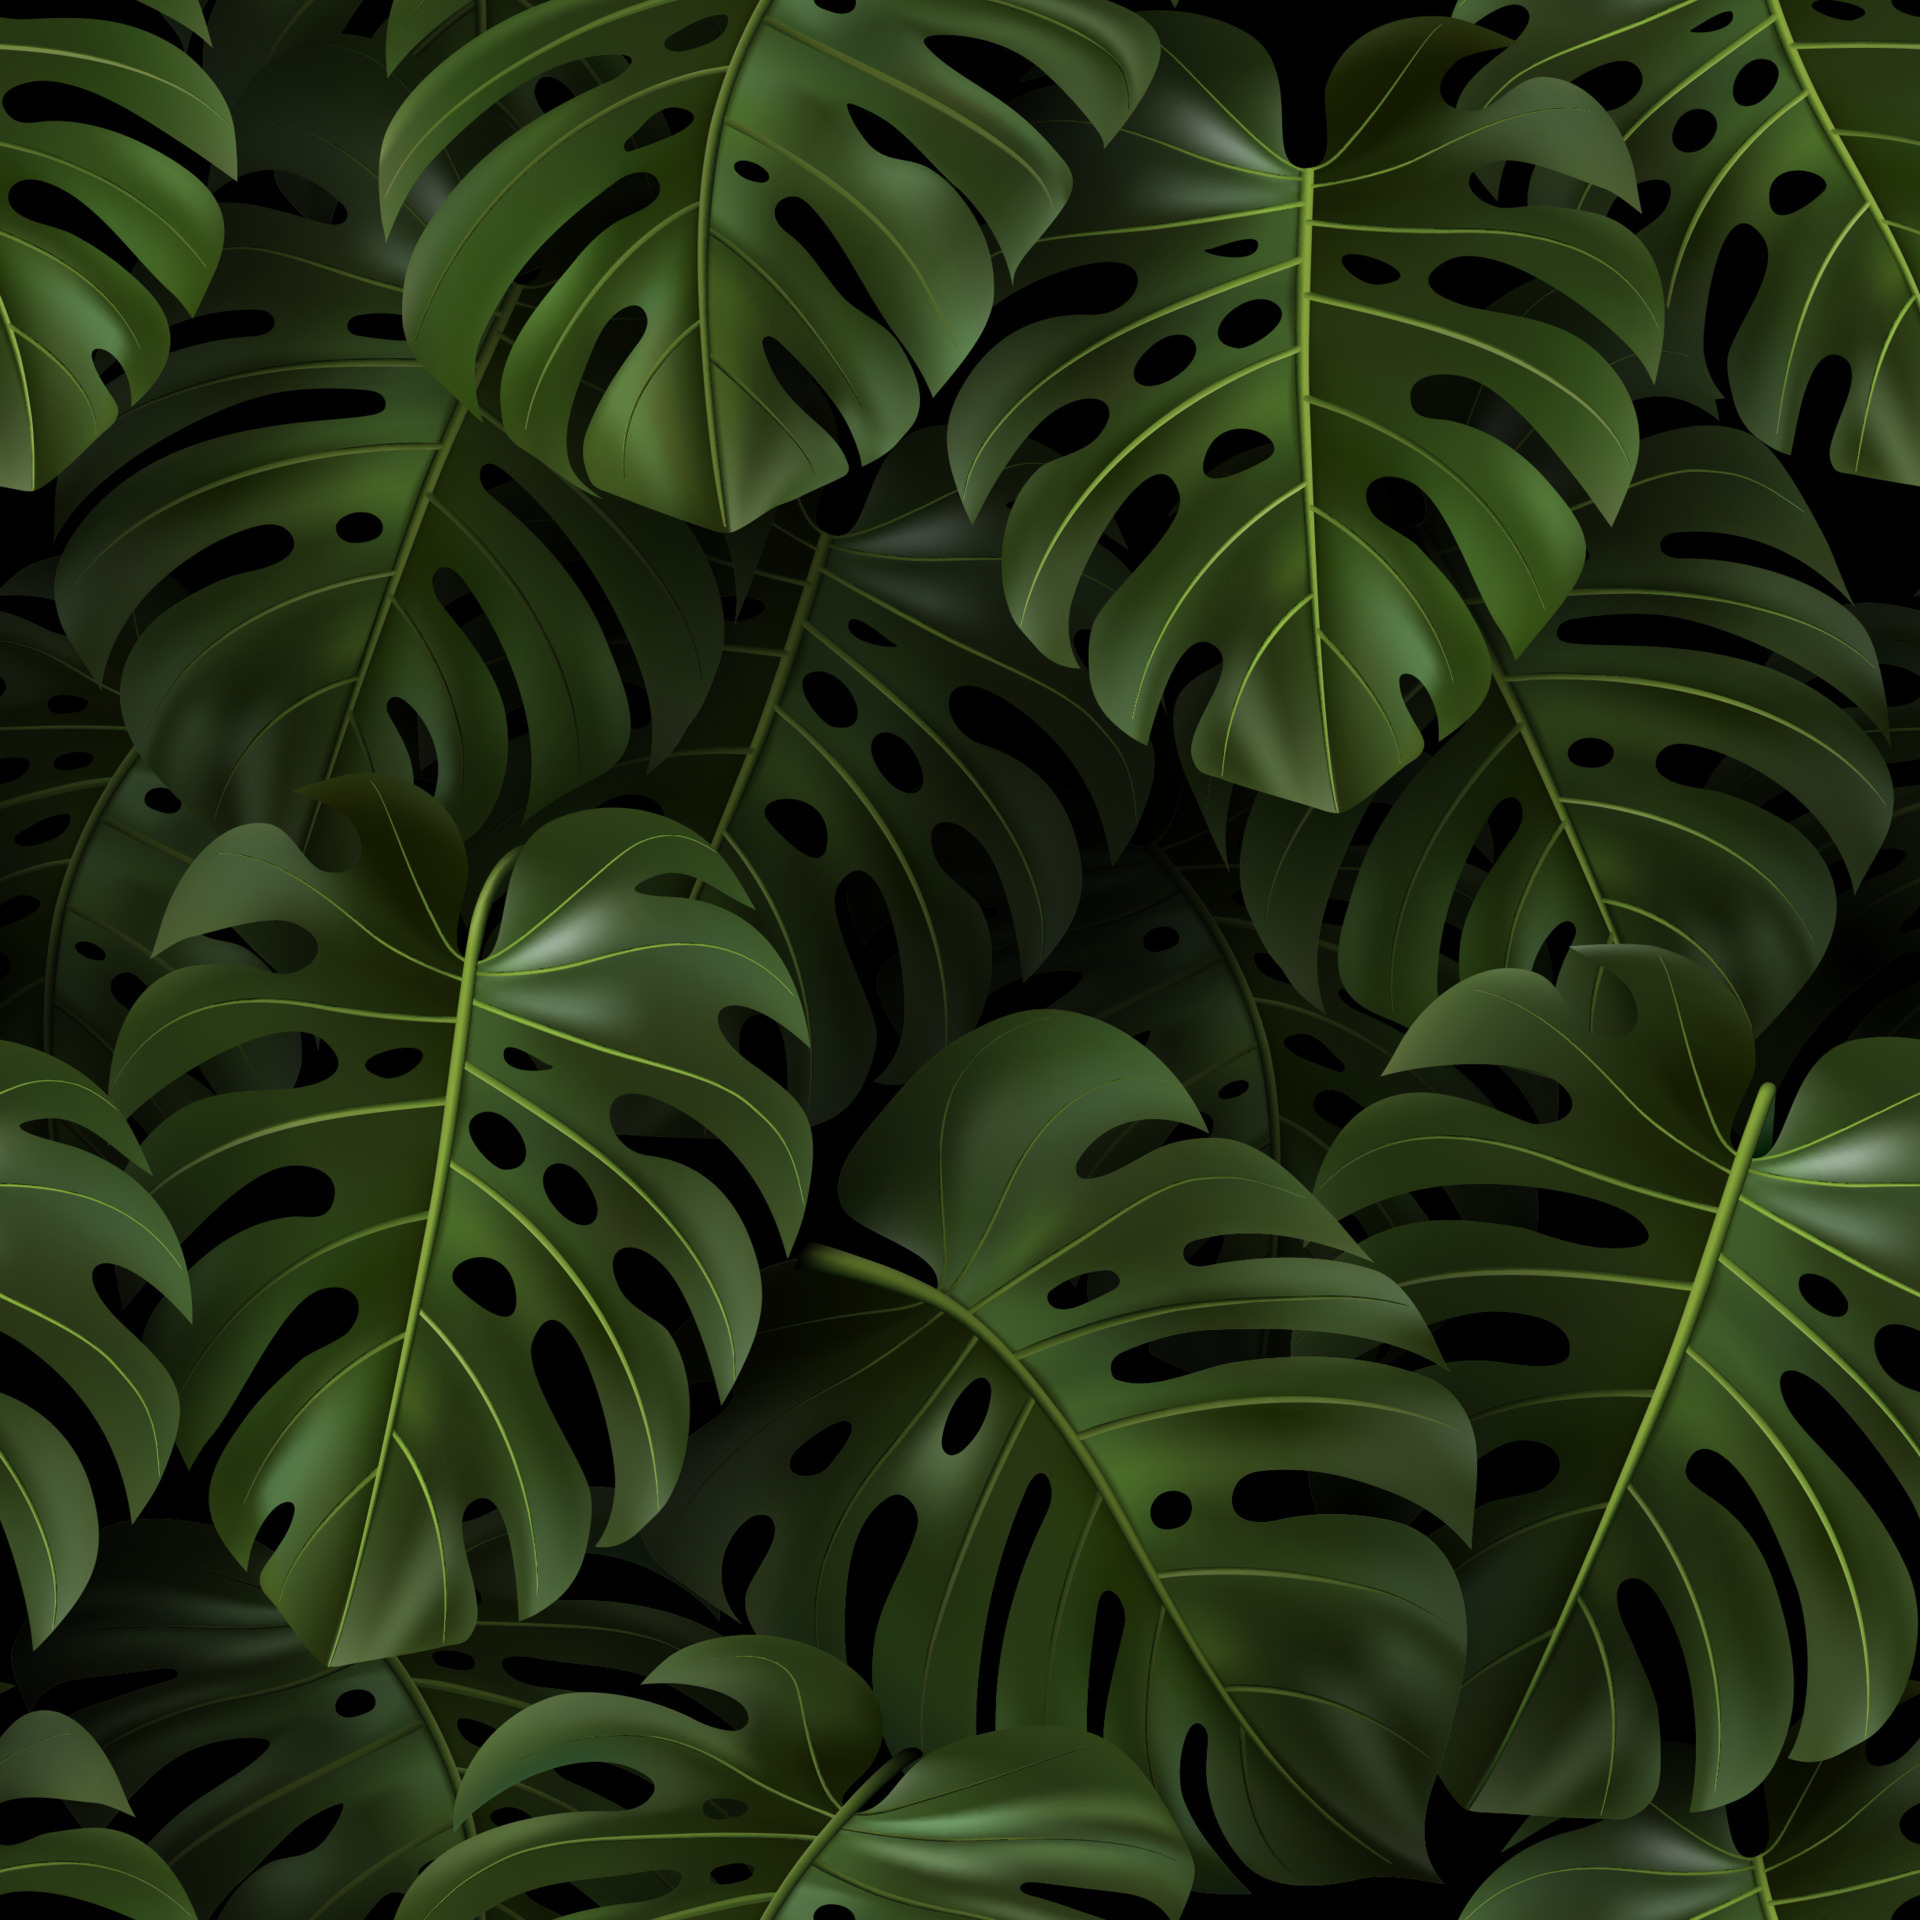 Bạn thích những bản vẽ thực vật lá 3D chân thực và mới lạ? Bức ảnh về bản vẽ thực vật lá Monstera xanh nhiệt đới chắc chắn sẽ làm bạn ngất ngây. Với màu sắc sinh động, họa tiết rõ nét và chi tiết, bức ảnh này đem đến cảm giác tuyệt vời như những chiếc lá Monstera đang thực sự đứng trên tay bạn.